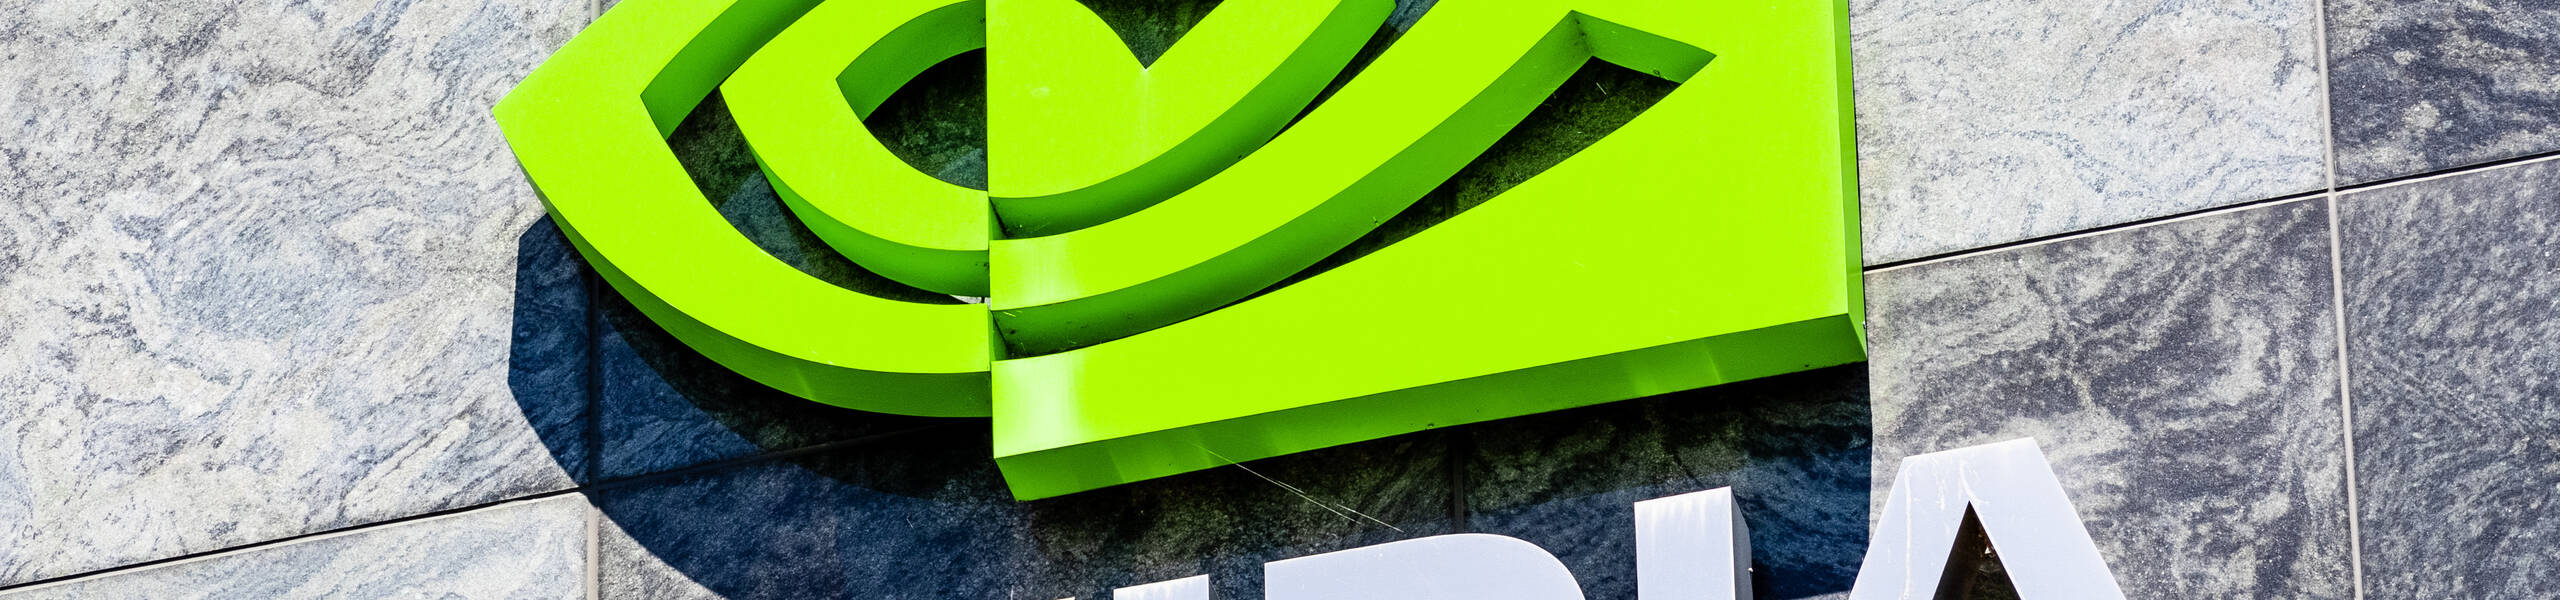 Nvidiaは、2月16日に収益発表をします